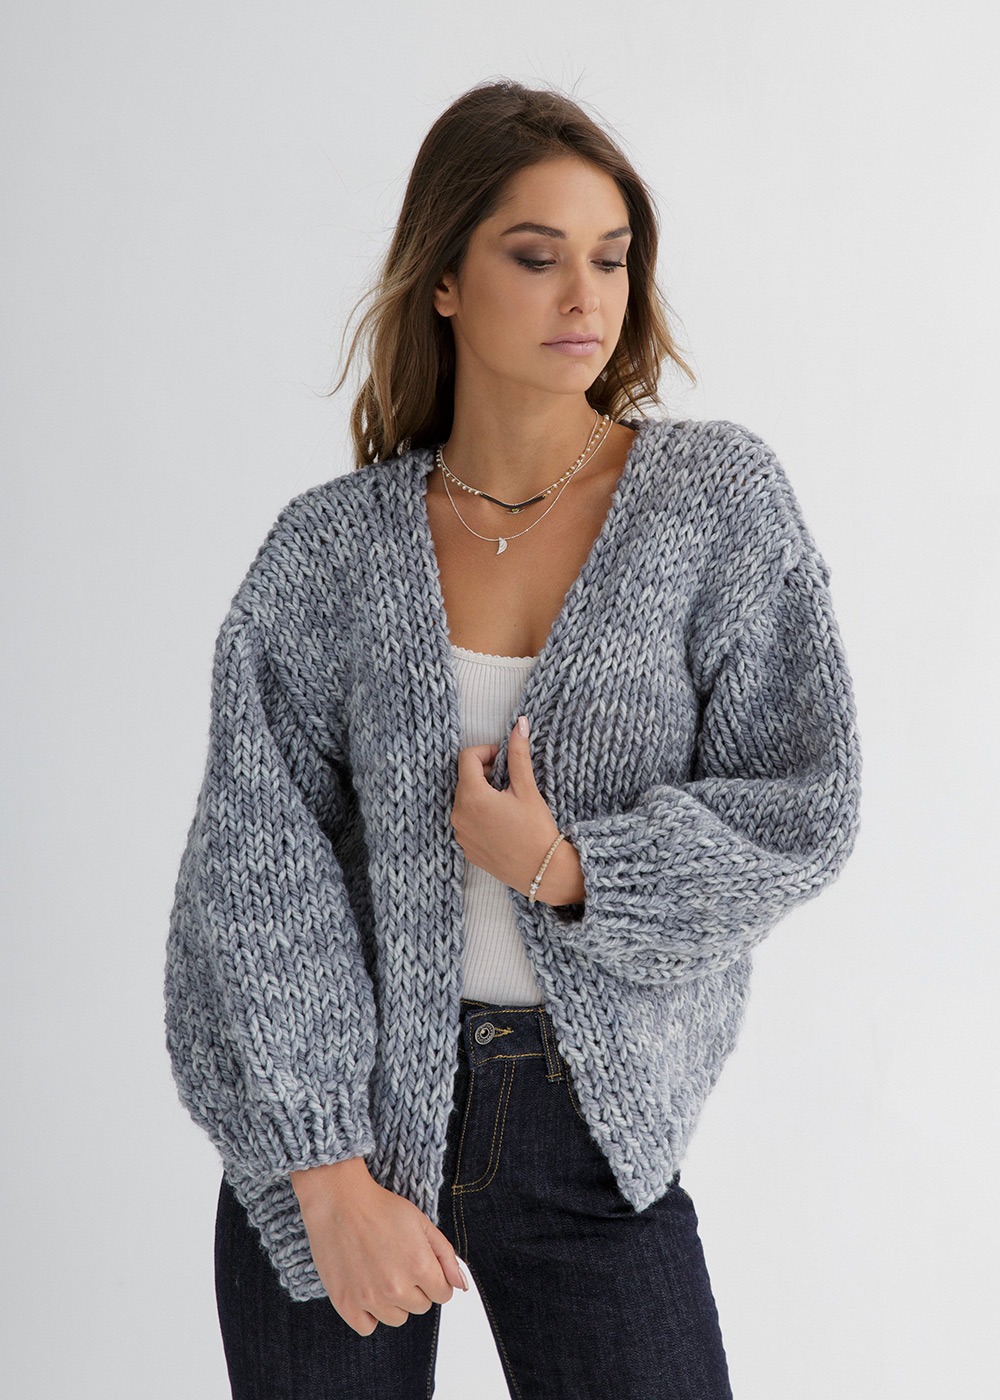 Cardigan knitting pattern Tatiana – Through the Stitch